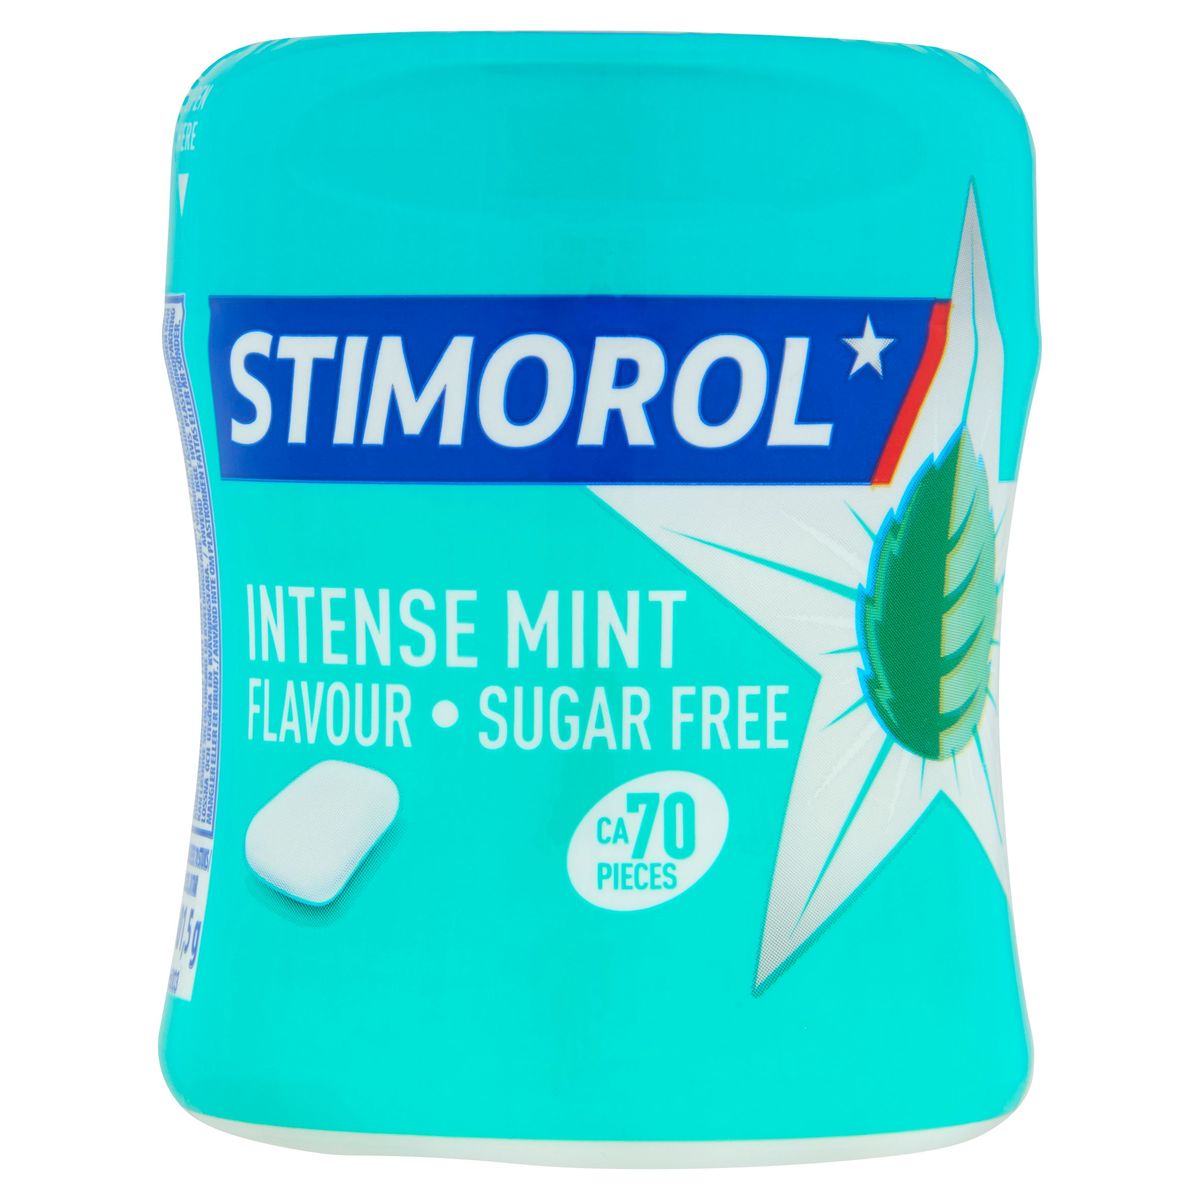 Stimorol Chewing-gum Intense Mint Sans Sucre Pot 70 Pcs